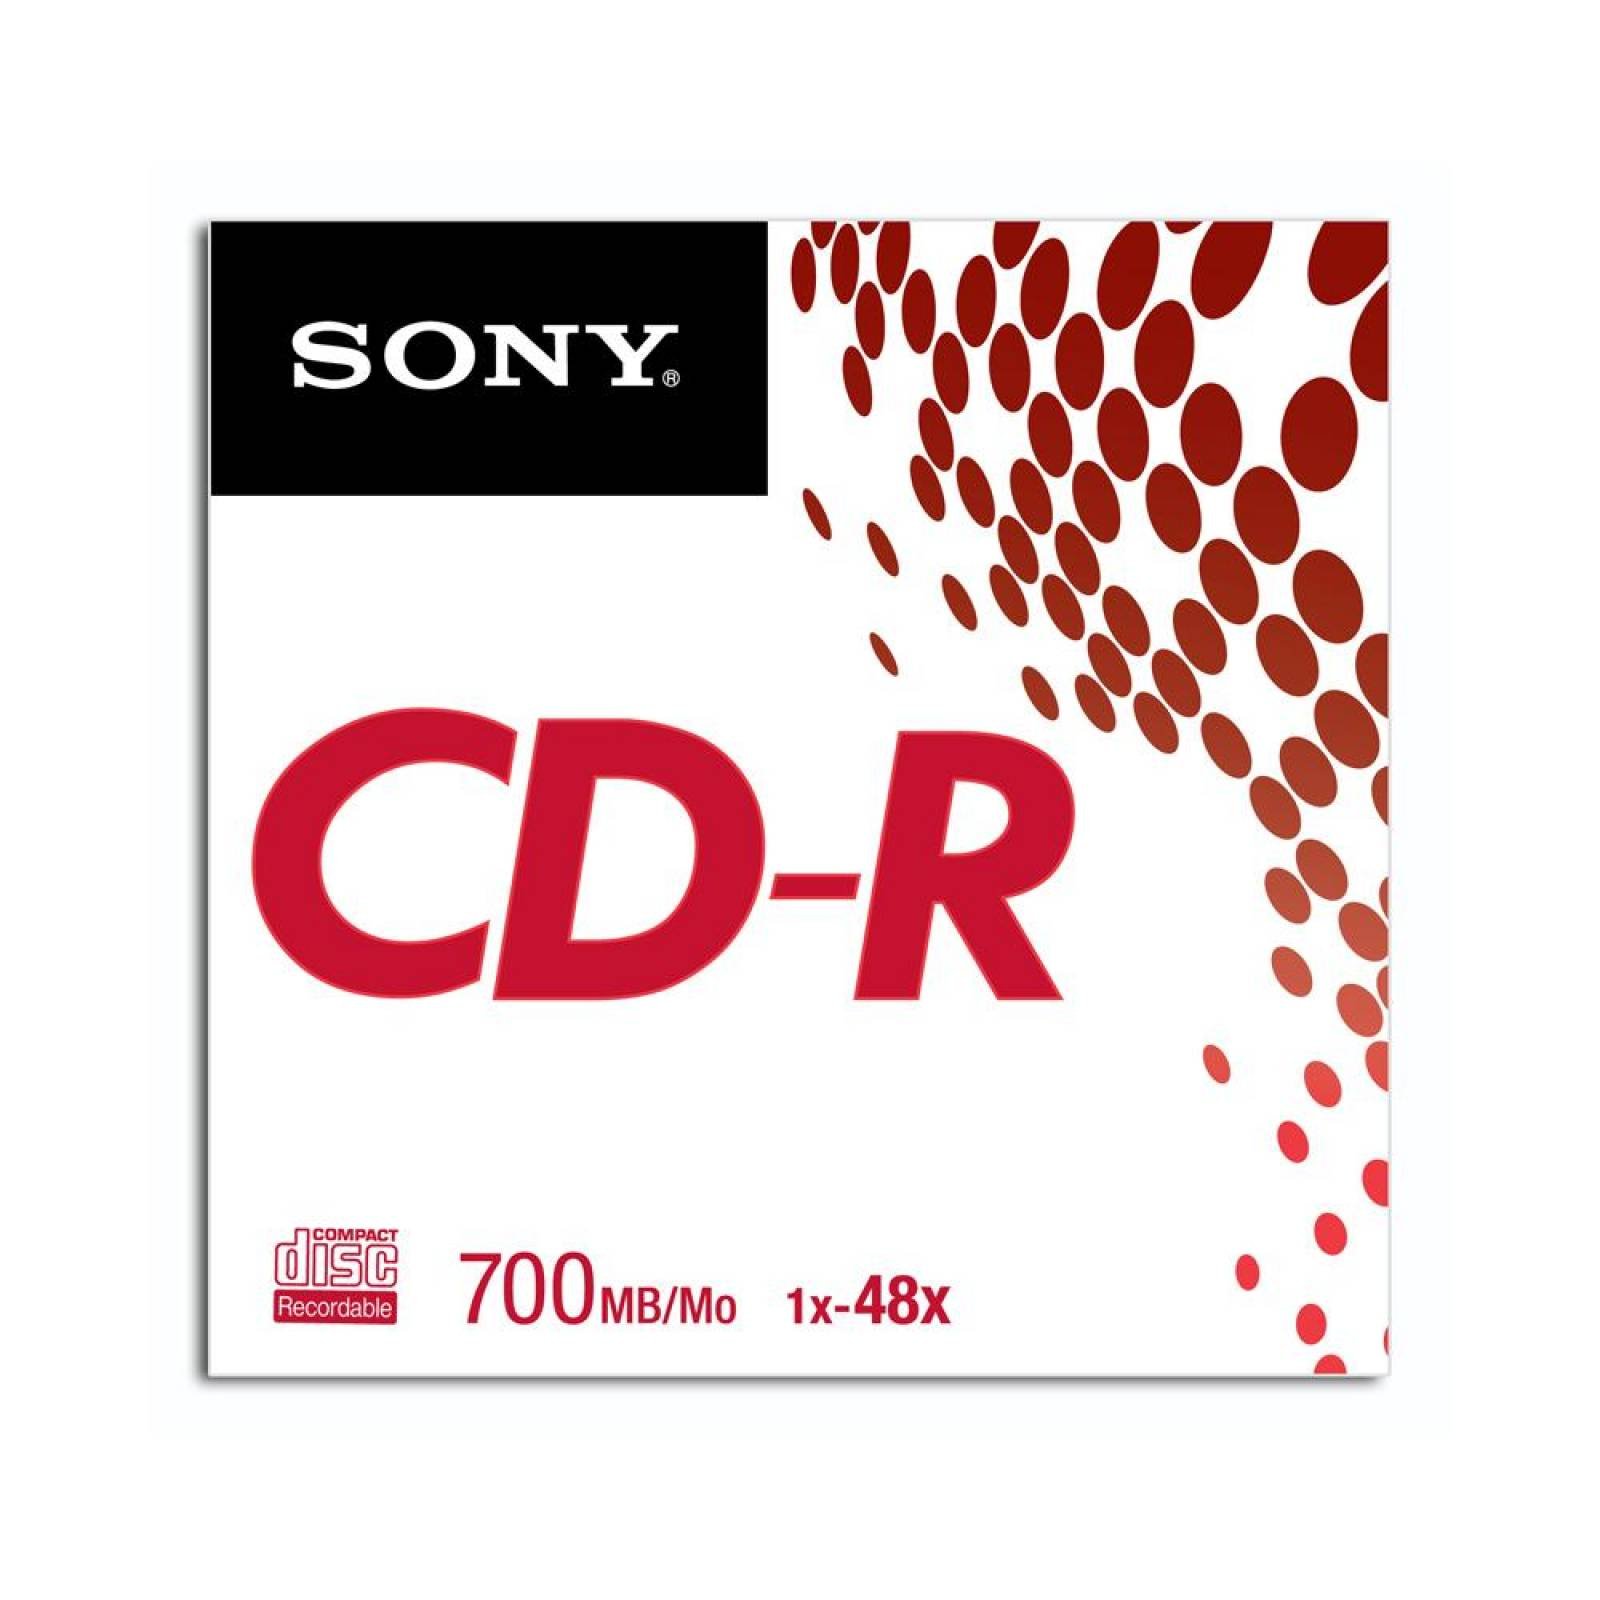 CD R SONY EN SOBRE 80MIN 700MB 48X GRABABLE 